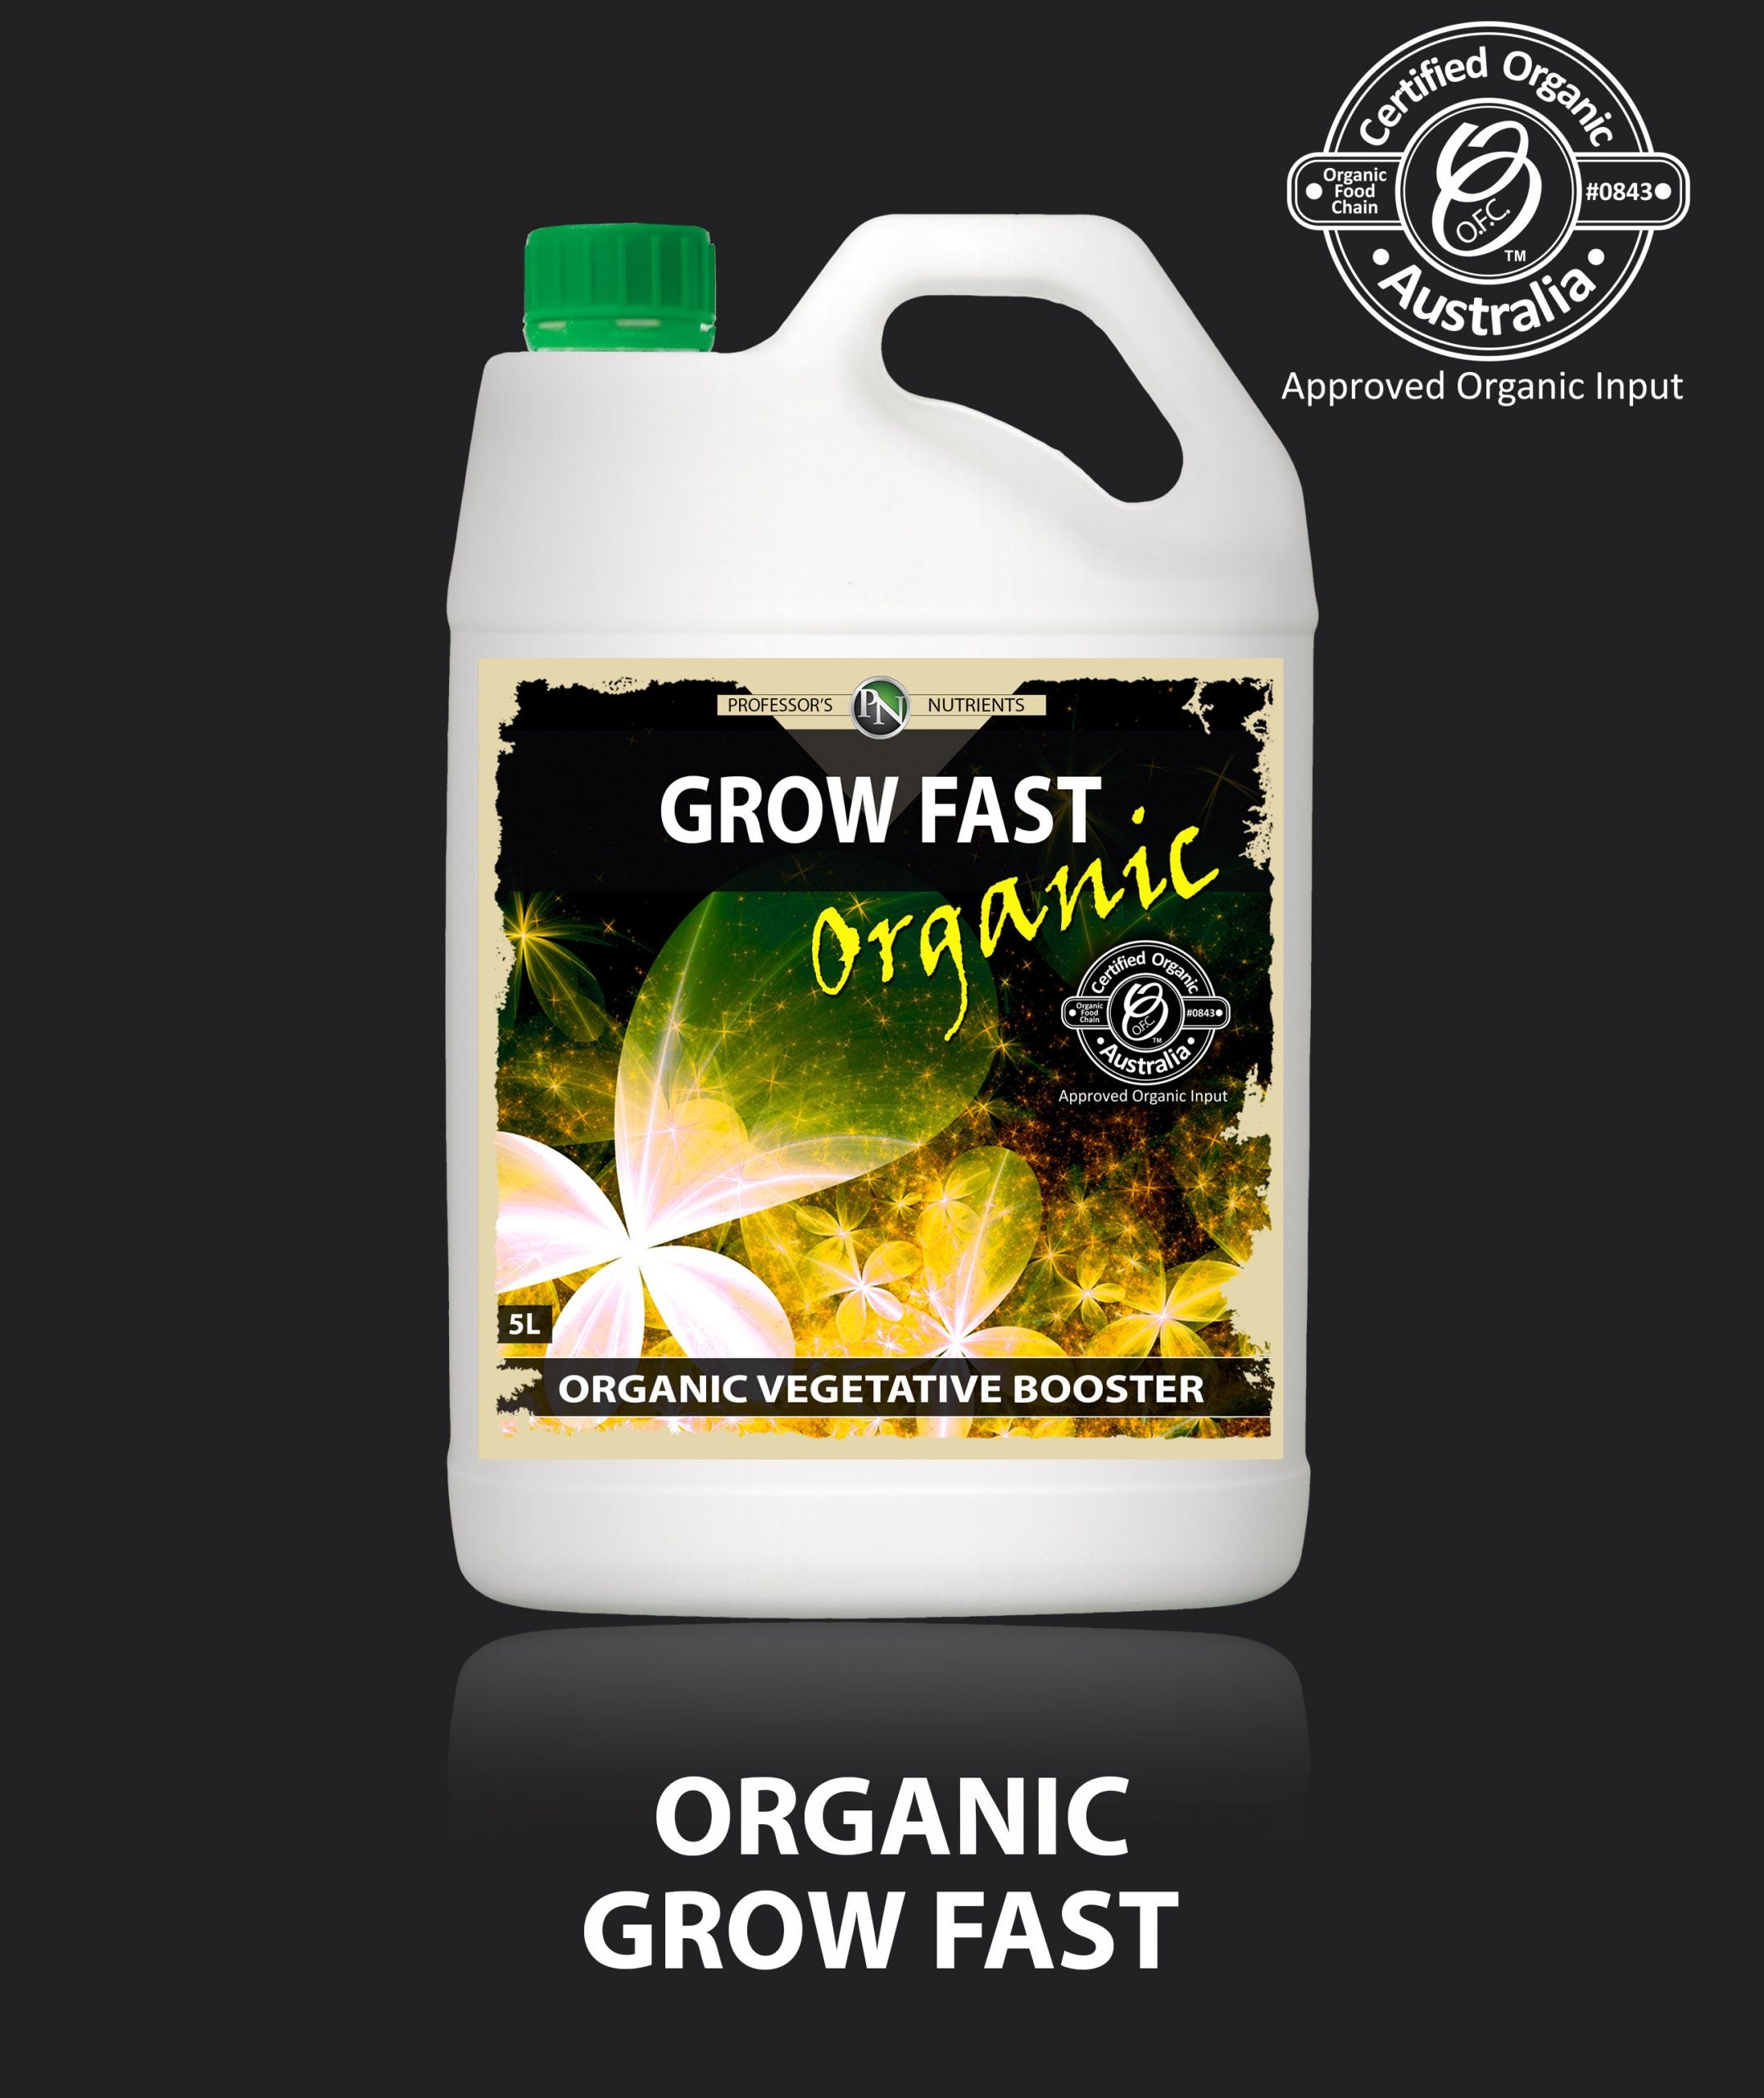 Professors Nutrients Organic Grow Fast